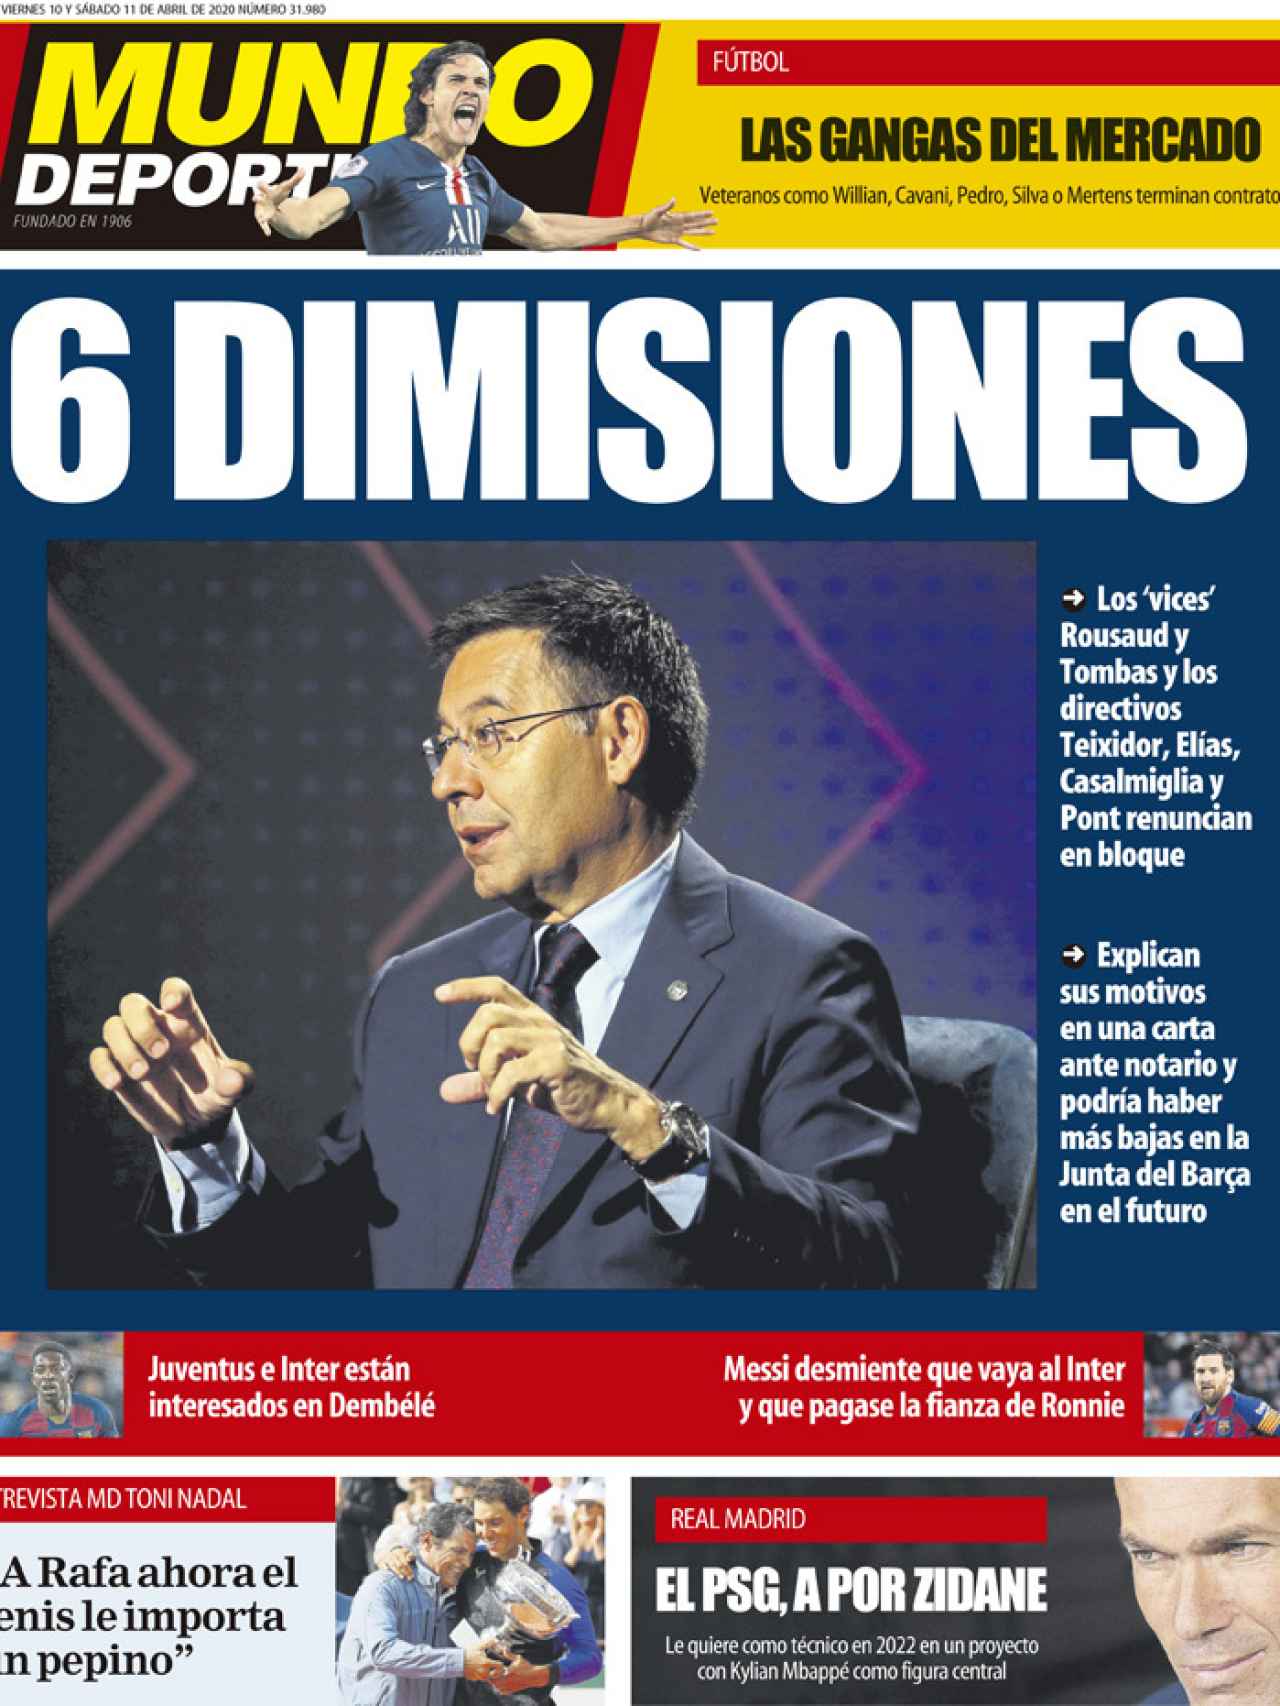 La portada del diario Mundo Deportivo (10/04/2020)